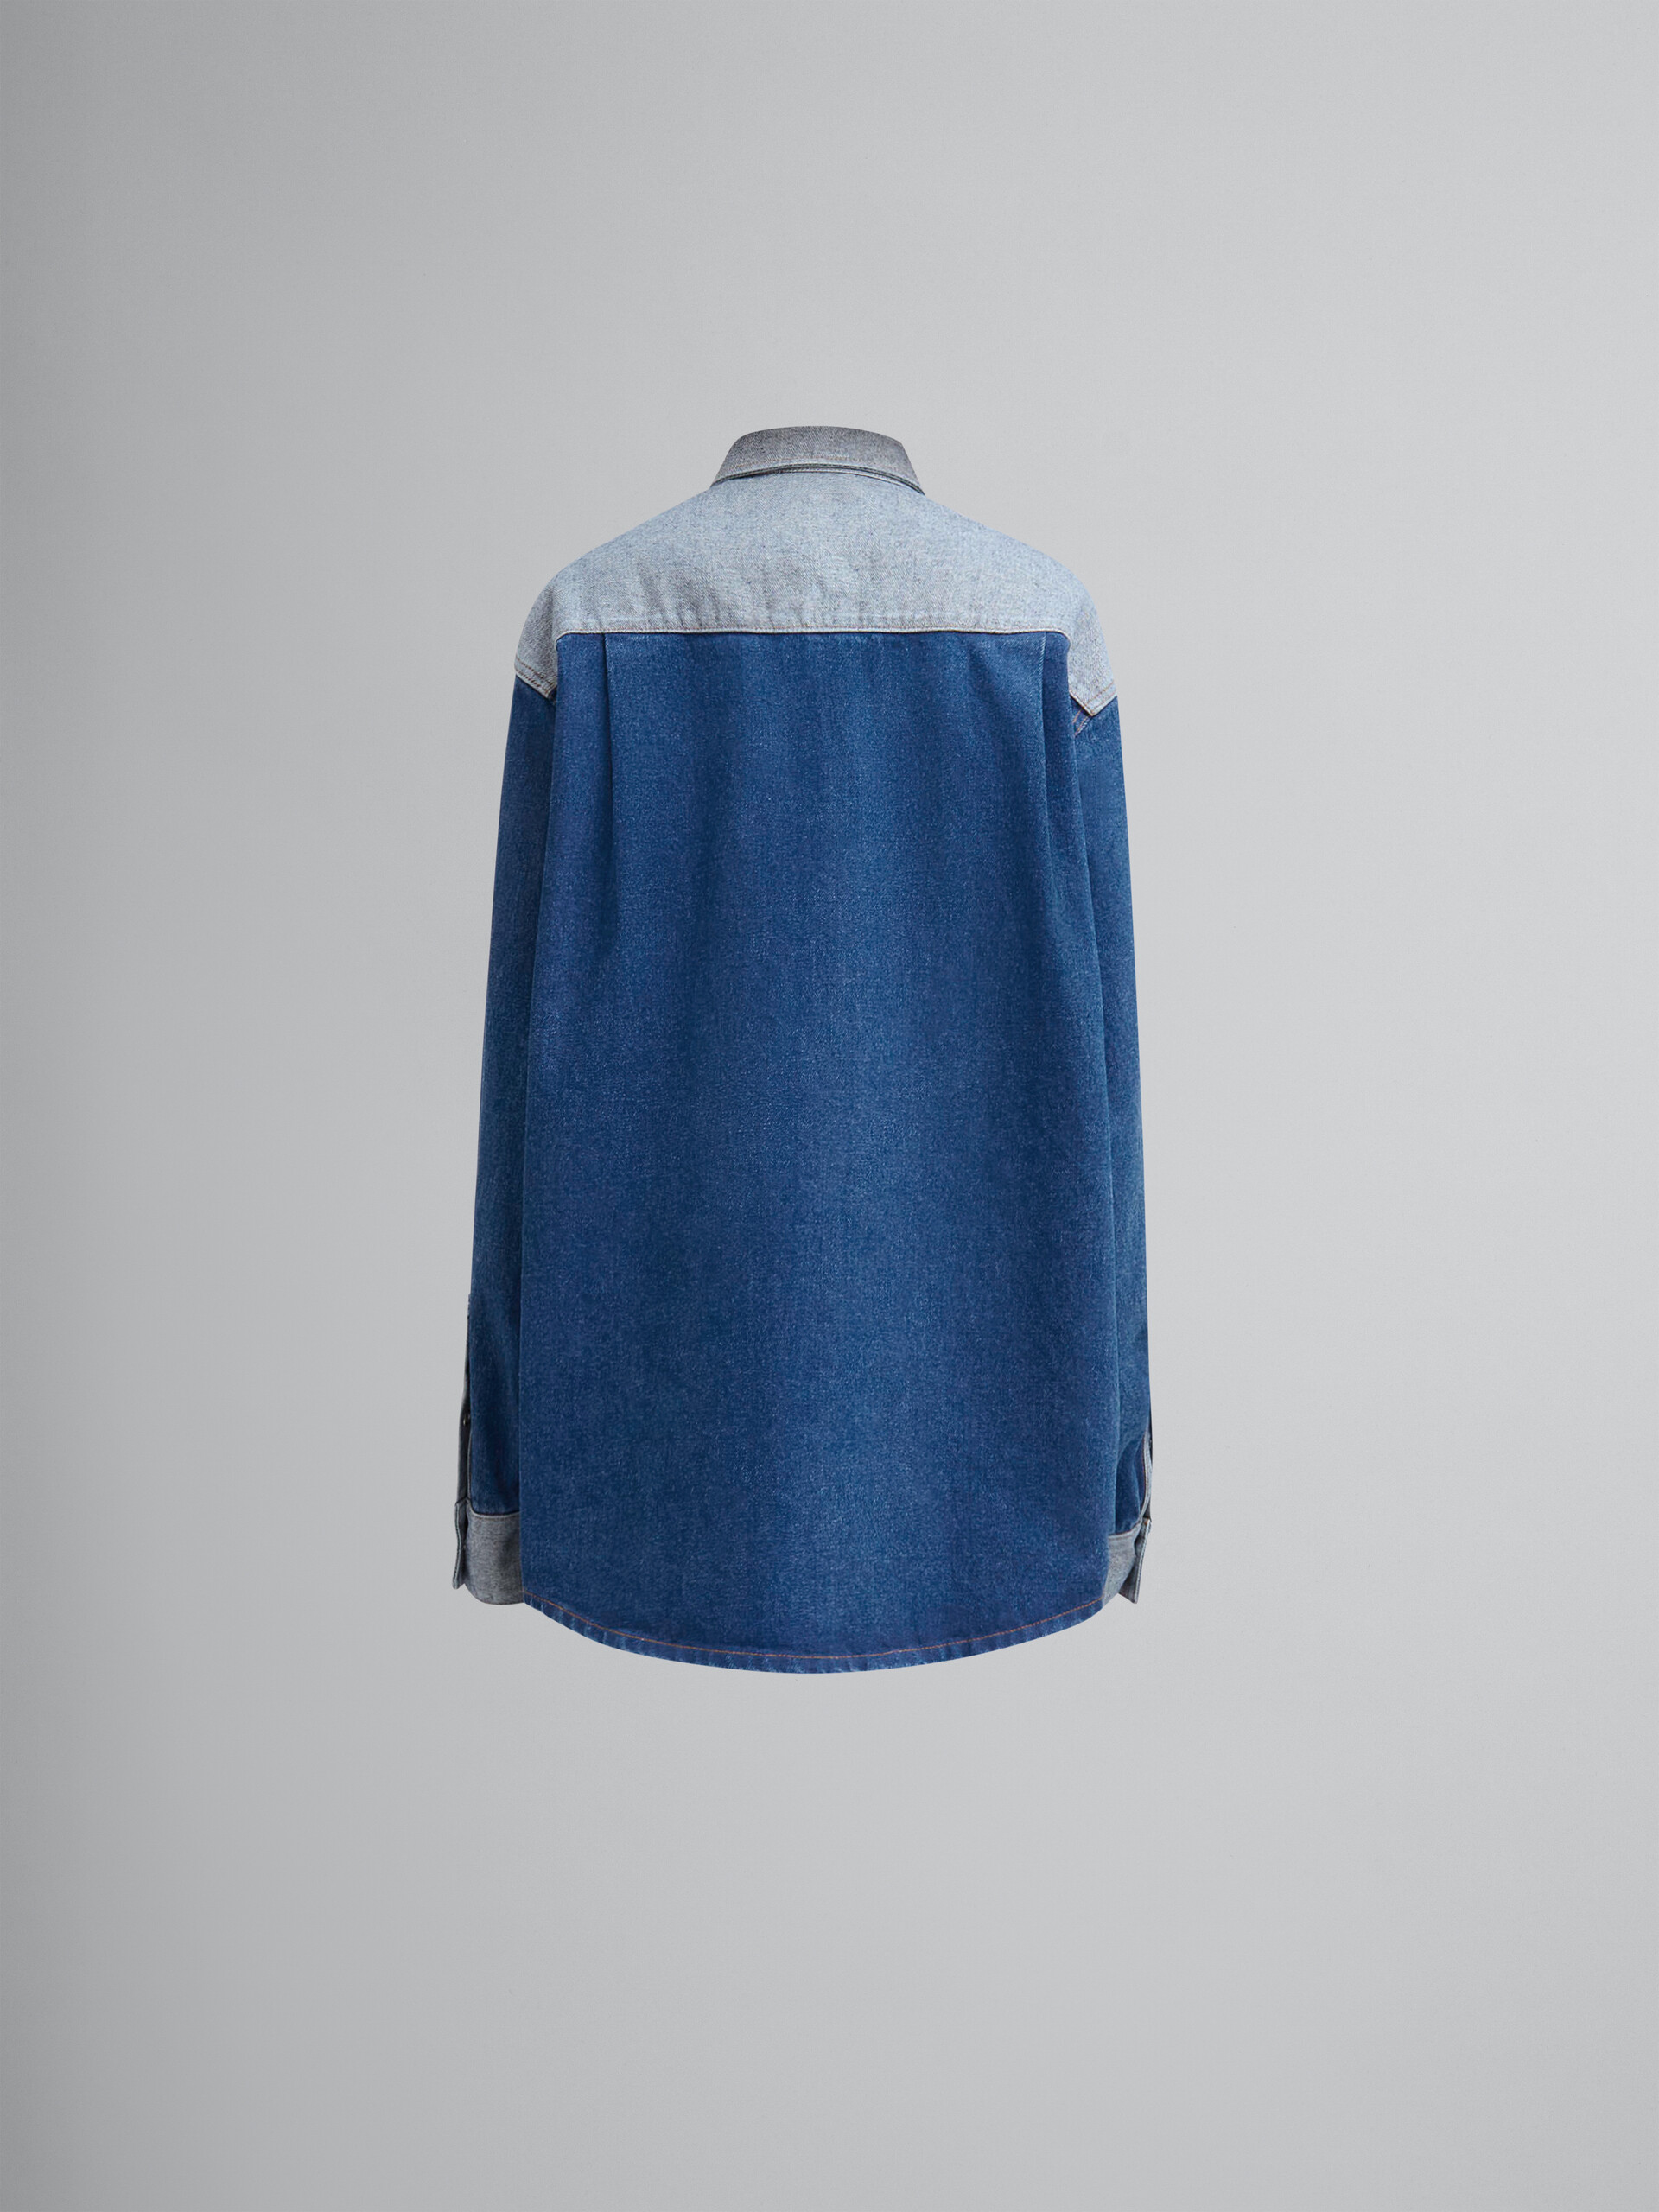 Zweifarbig blaues Jeanshemd mit unversäumten Rändern - Hemden - Image 2